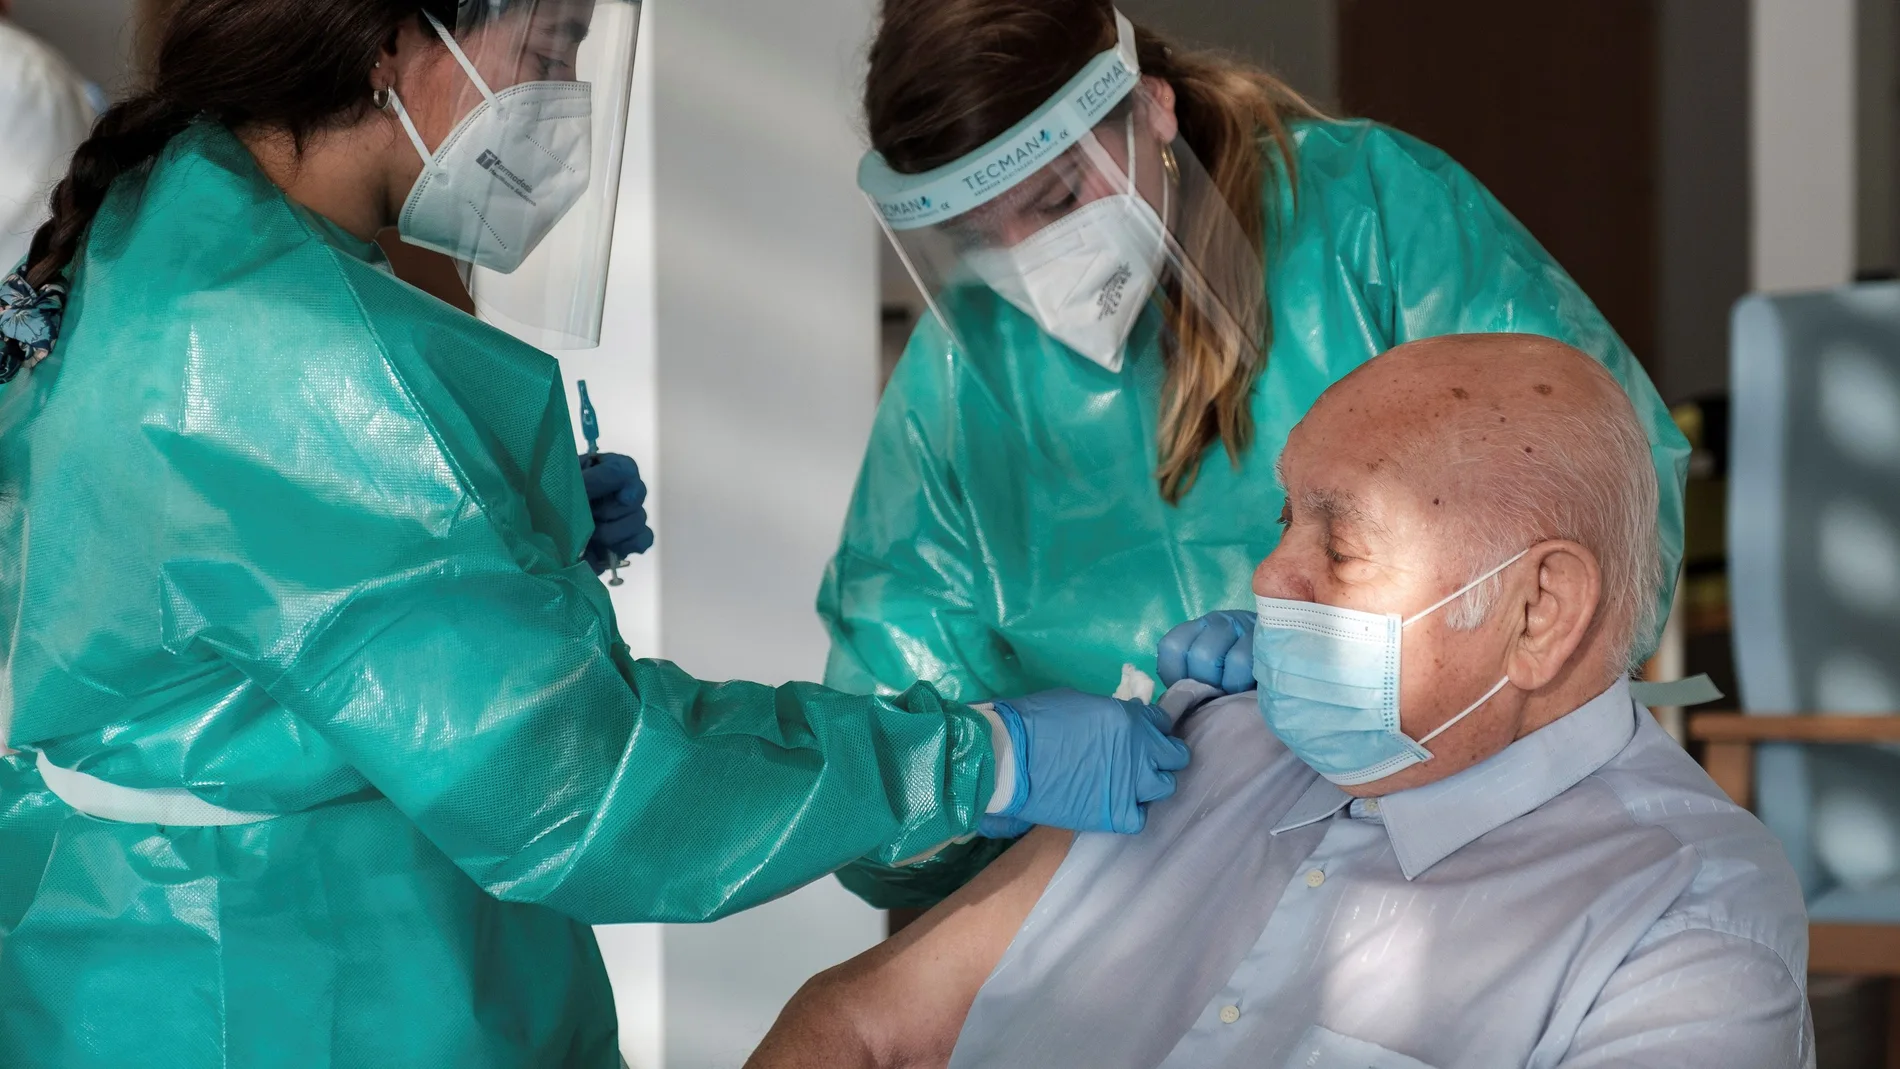 Un momento del primer acto de vacunación en el área de salud de Ibiza y Formentera, que ha tenido lugar este lunes en la residencia de Sa Serra. Los primeros vacunados son un residente y un profesional del centro. EFE/ Sergio G. Cañizares